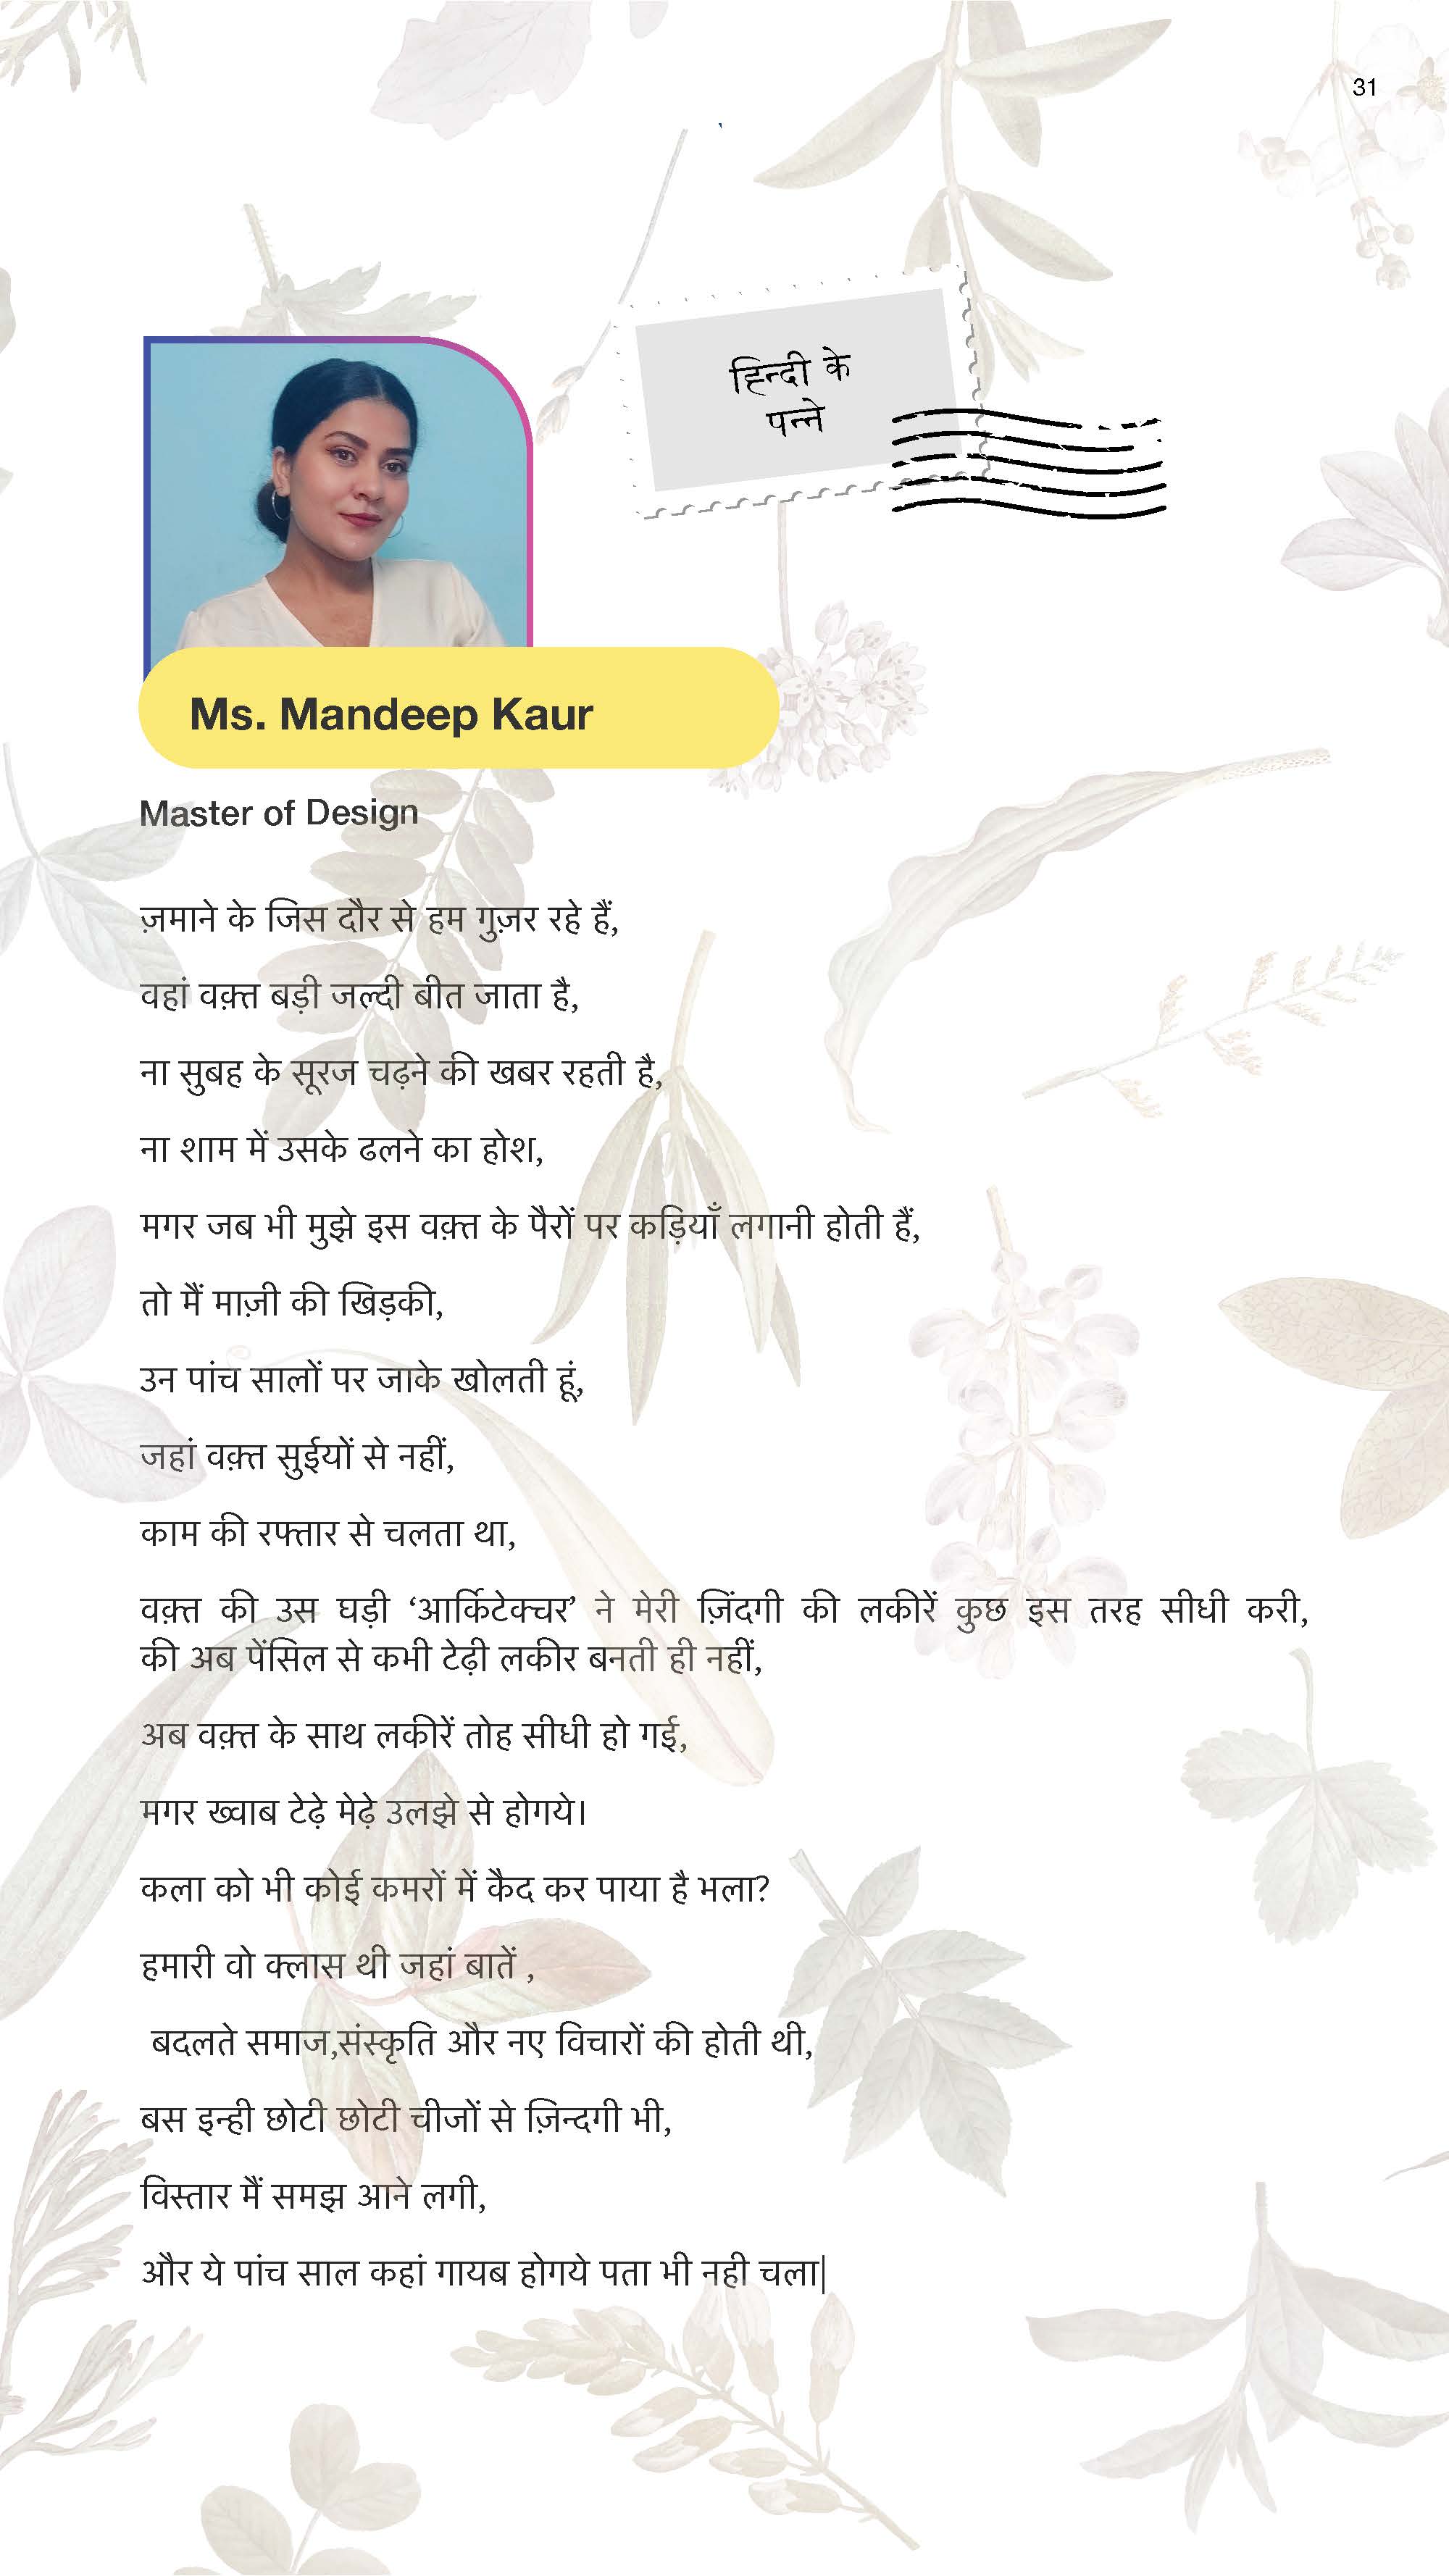 Mandeep Kaur